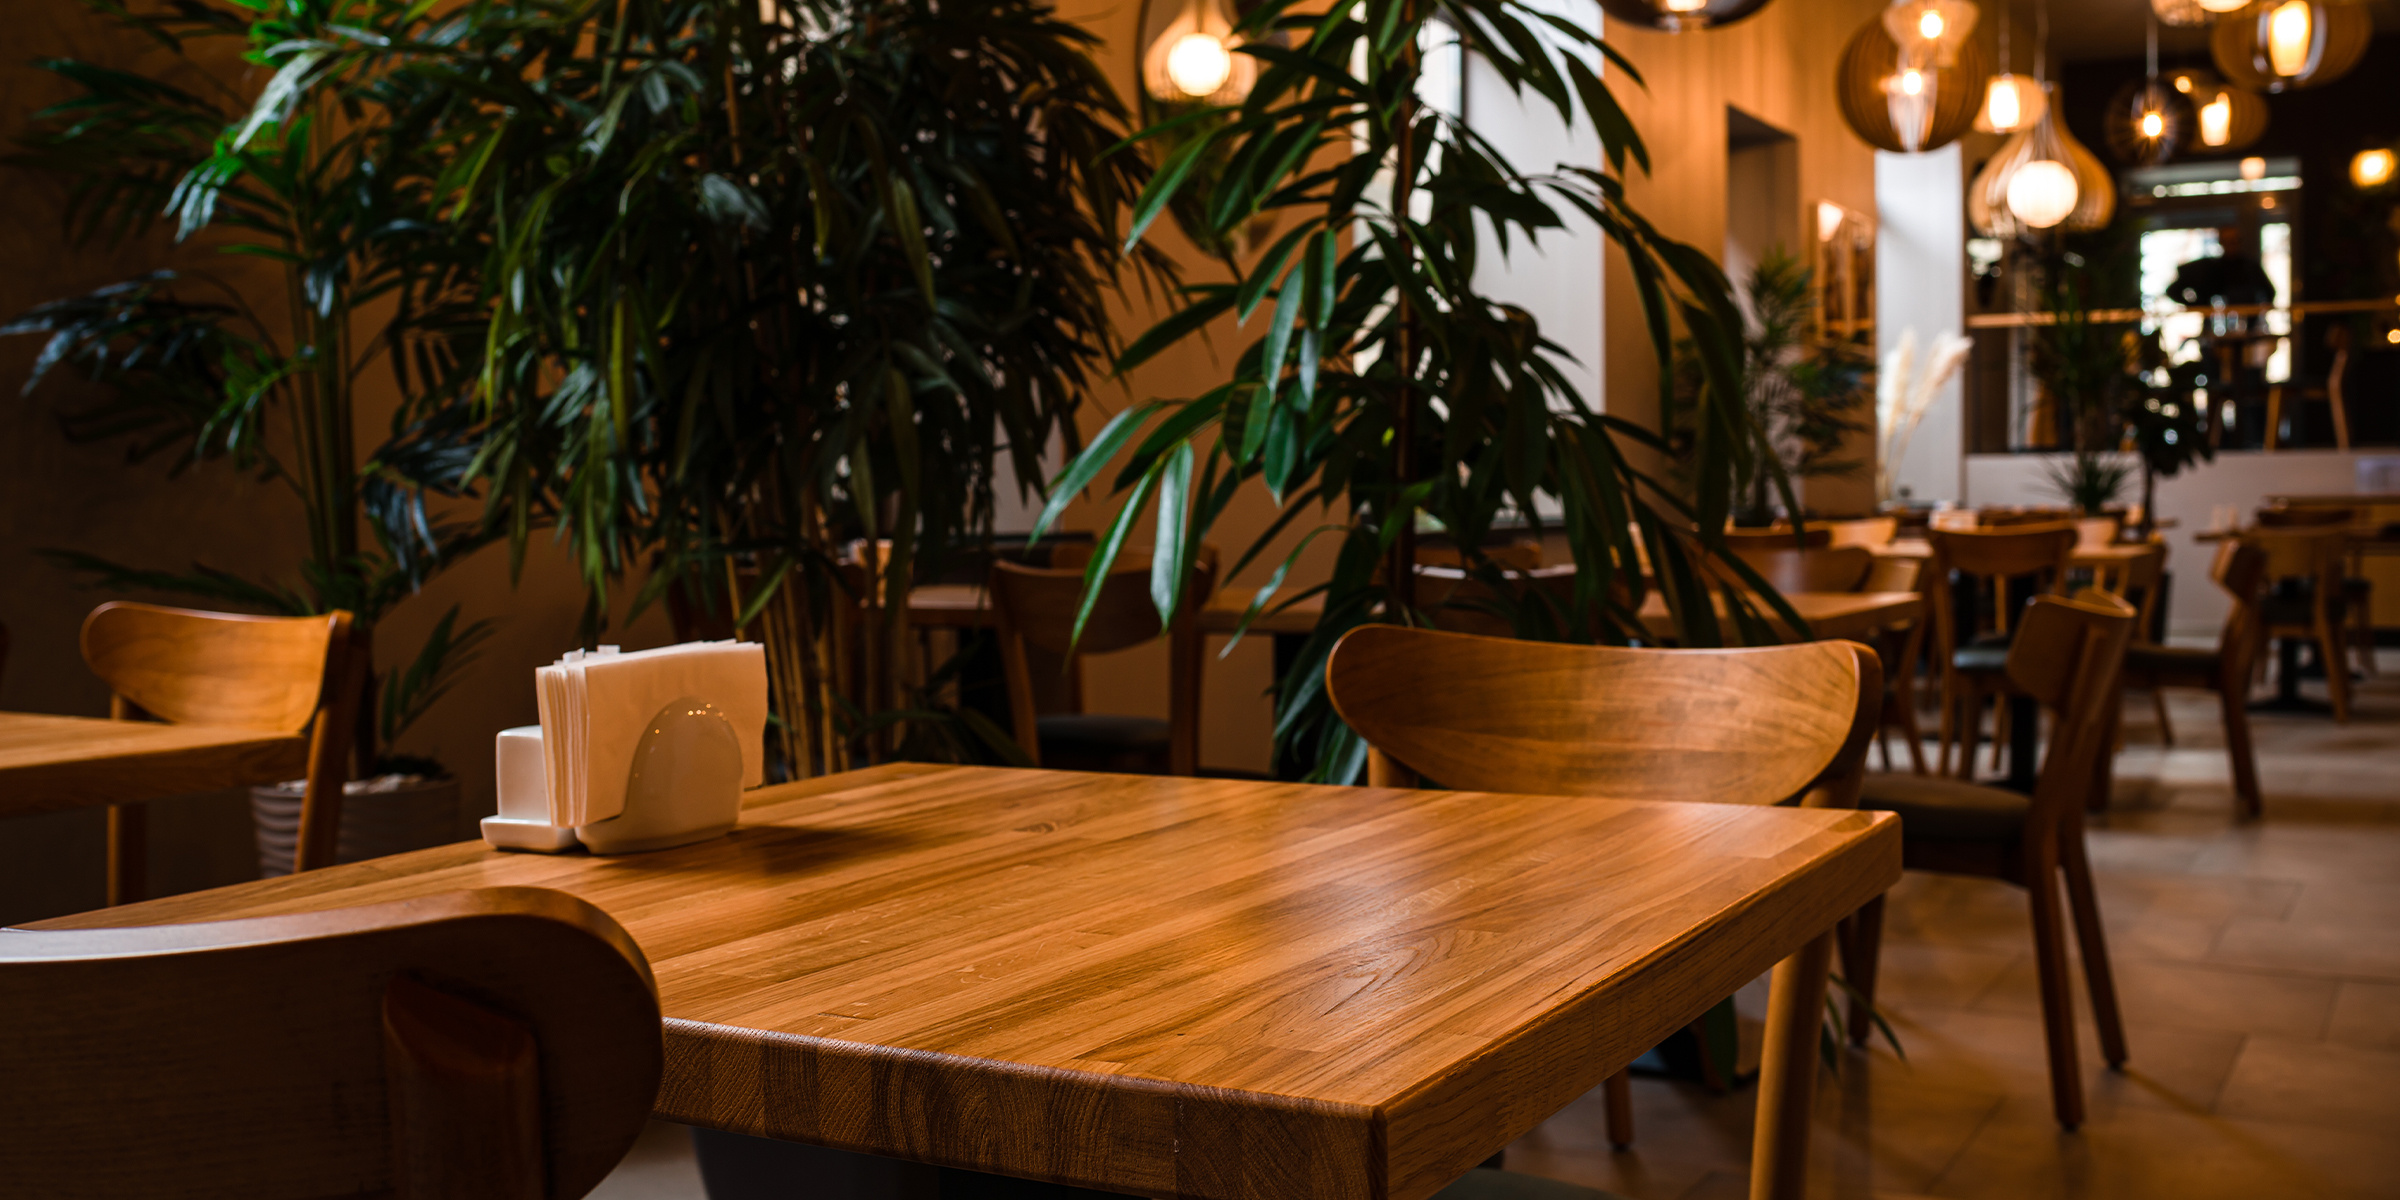 An elegant café | Source: Shutterstock